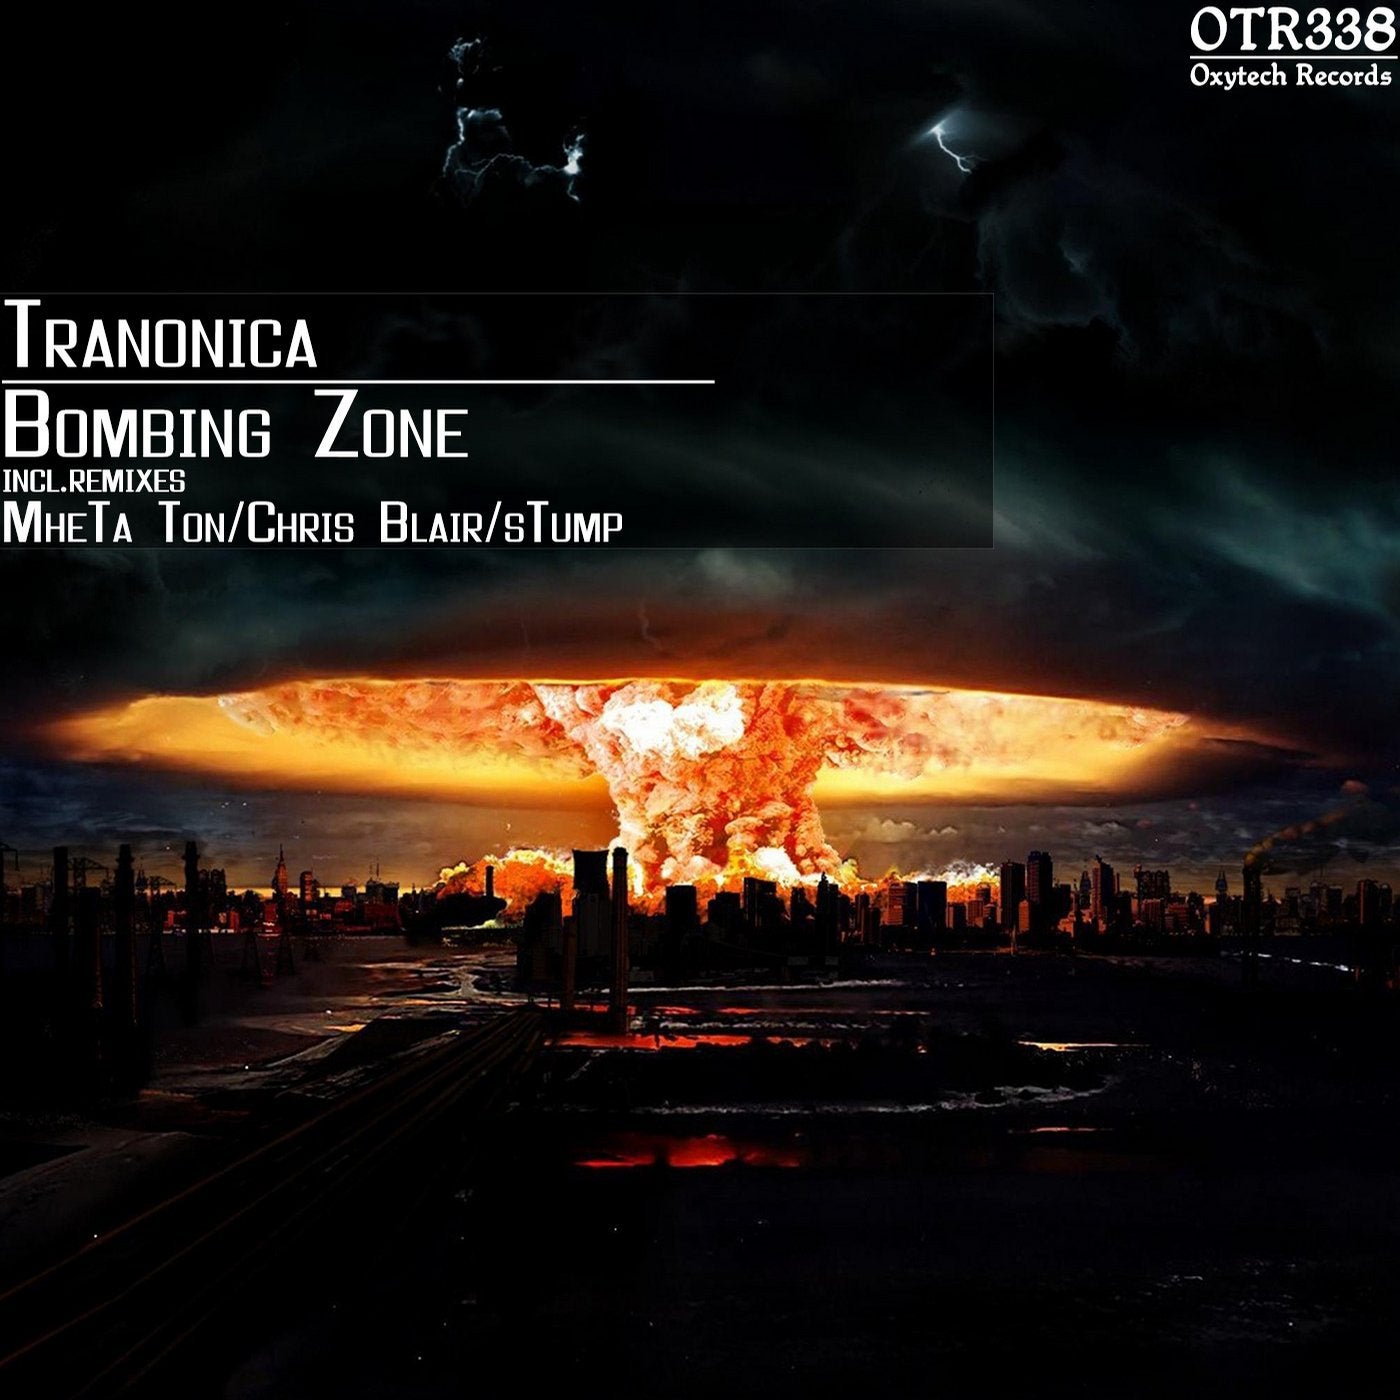 Bombing Zone